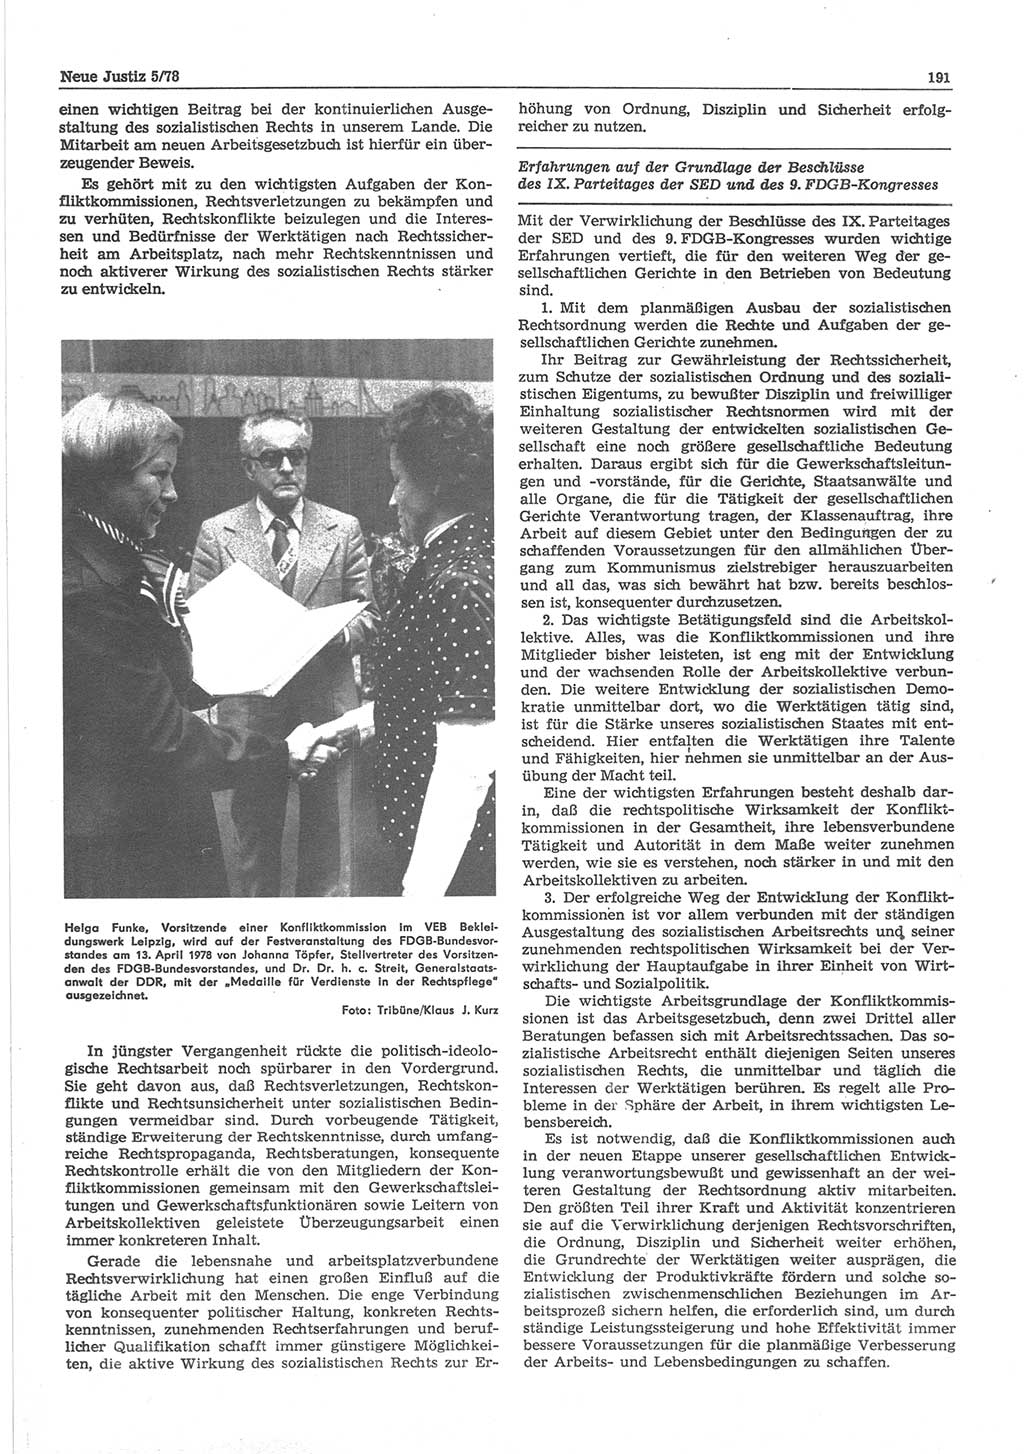 Neue Justiz (NJ), Zeitschrift für sozialistisches Recht und Gesetzlichkeit [Deutsche Demokratische Republik (DDR)], 32. Jahrgang 1978, Seite 191 (NJ DDR 1978, S. 191)